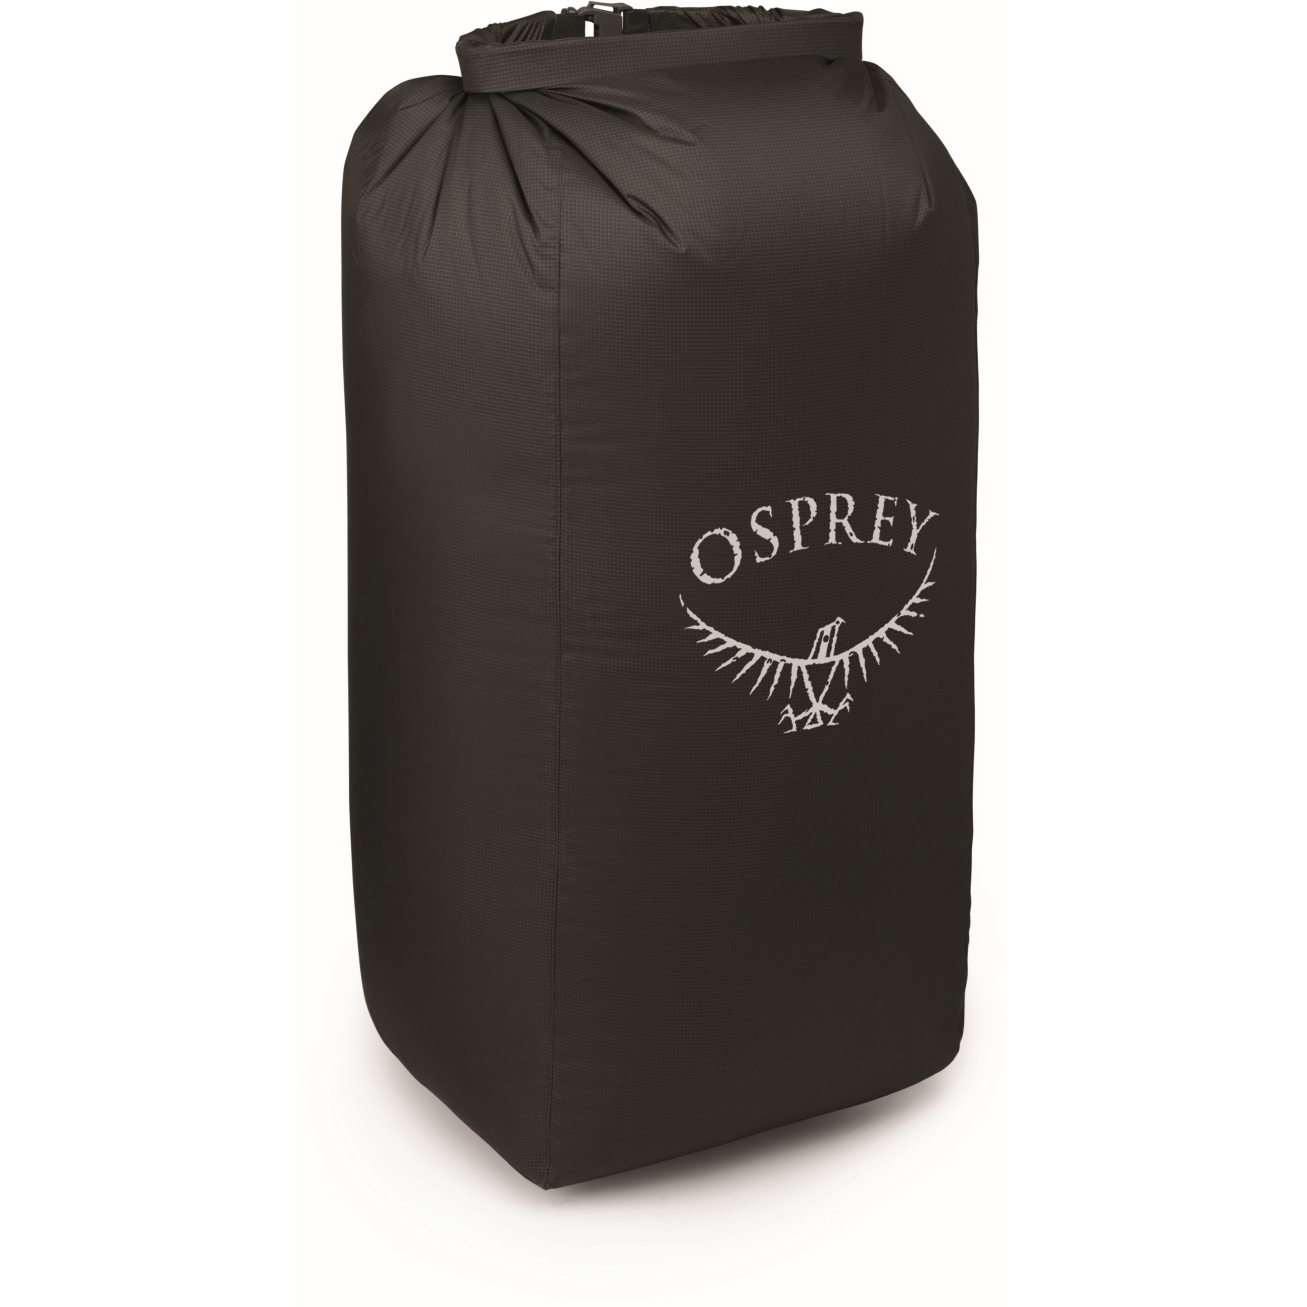 Produktbild von Osprey Ultralight Pack Liner L (70-100L) - Packsack - Schwarz